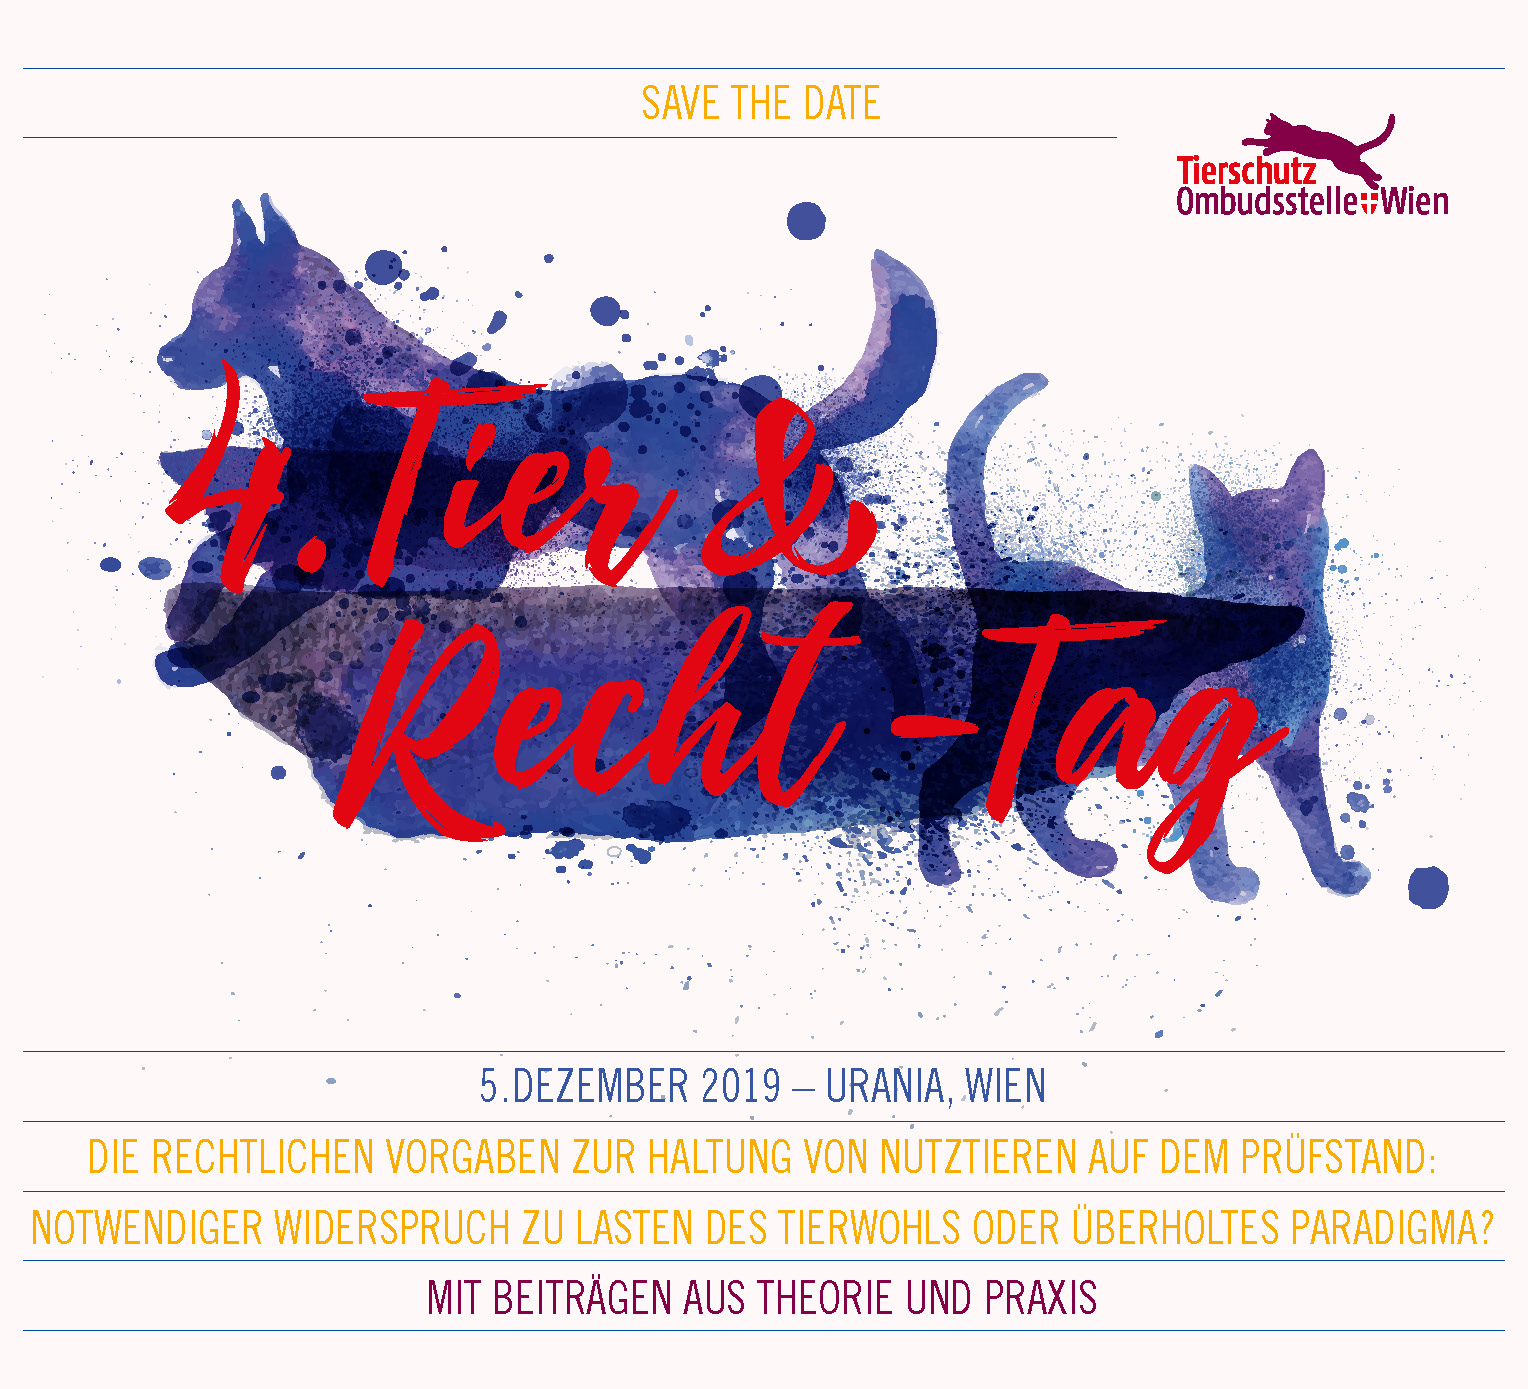 Save the date. Tier und Recht - Tag